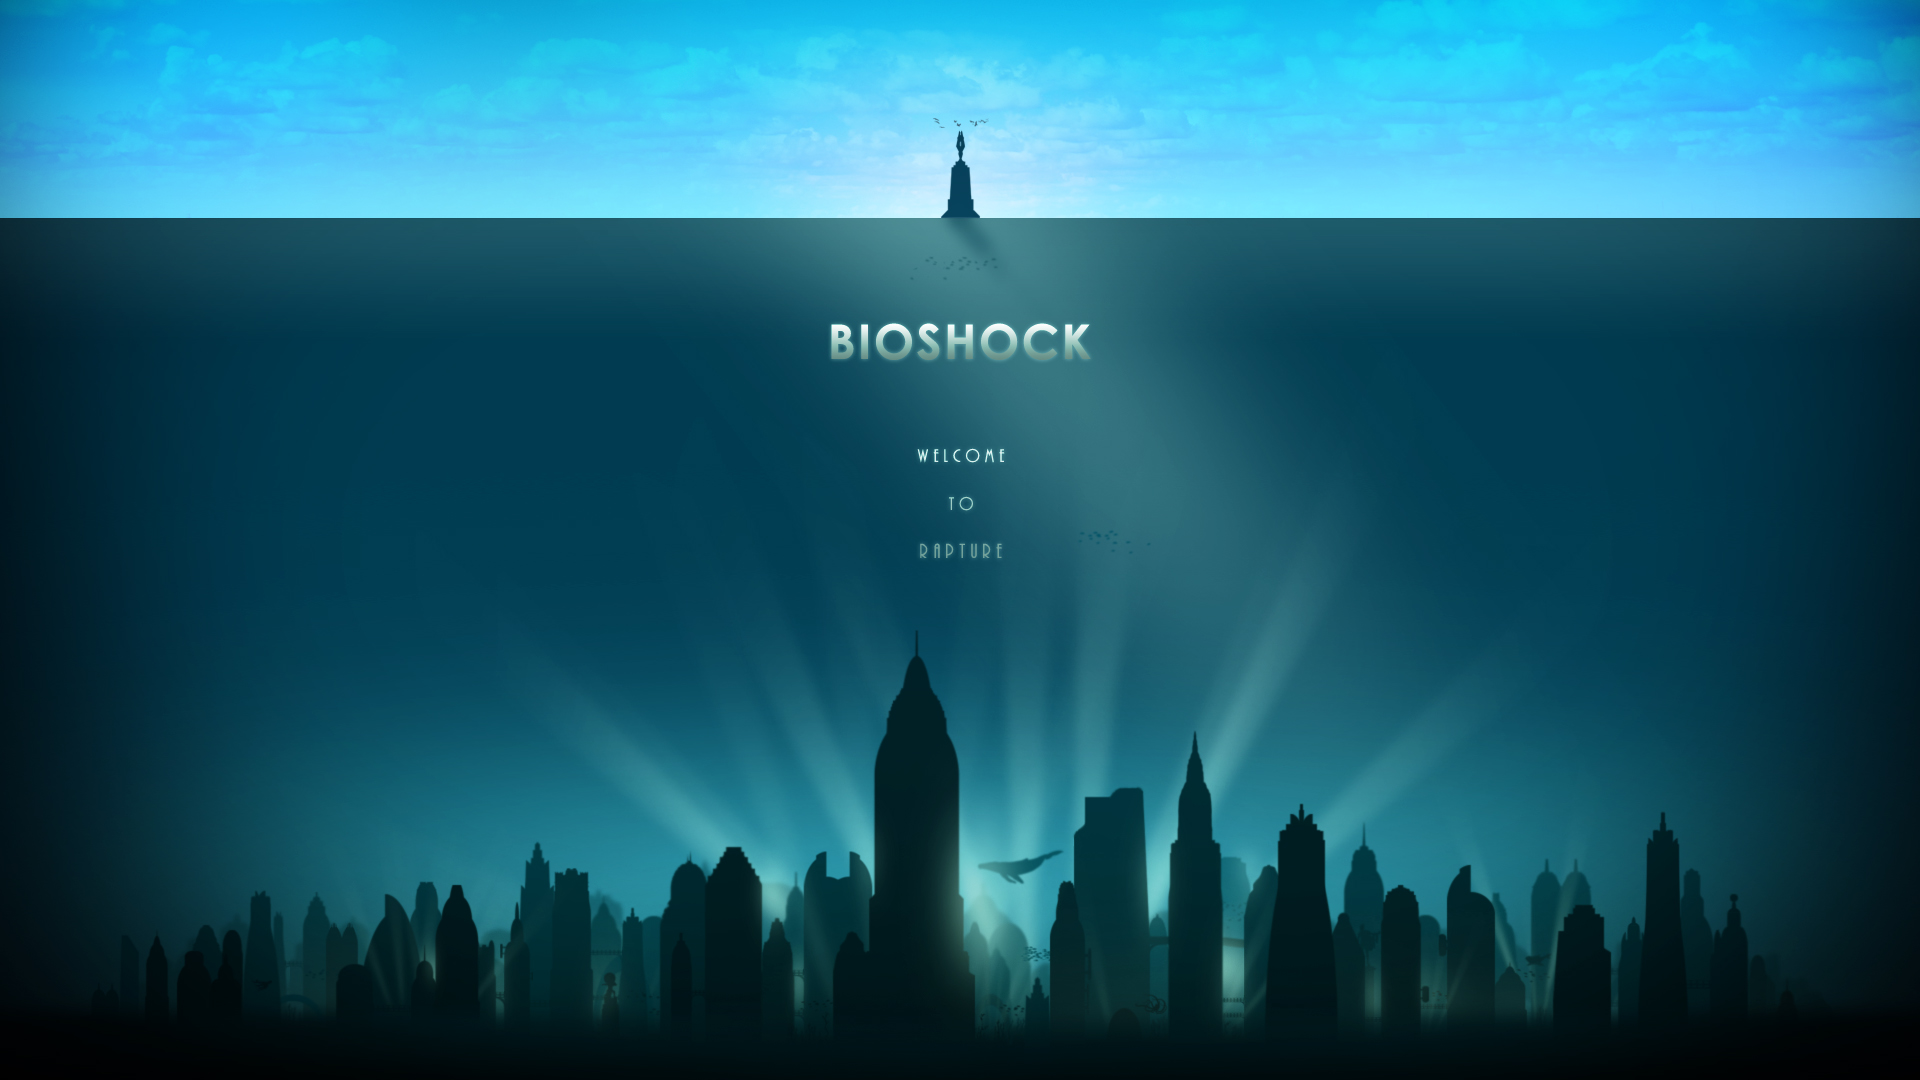 Bioshock PC Wallpaper HD 1080p